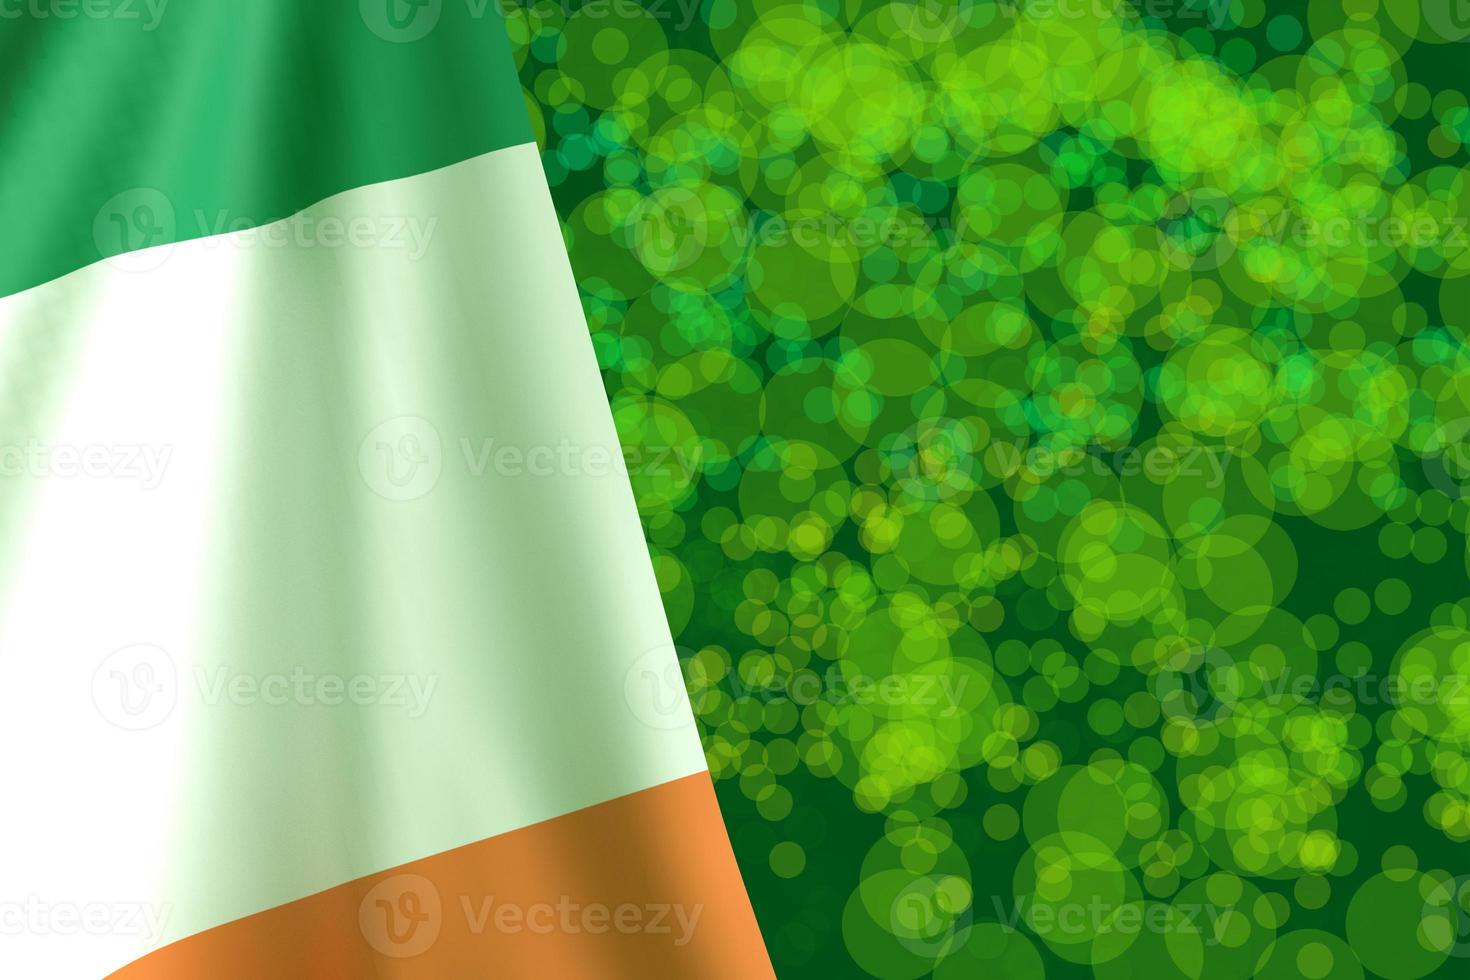 irlanda bandera ondeando país verde color bokeh fondo papel pintado copia espacio símbolo decoración ornamento día de san patricio trébol irlandés persona 17 diecisiete marzo independencia celebración.3d render foto